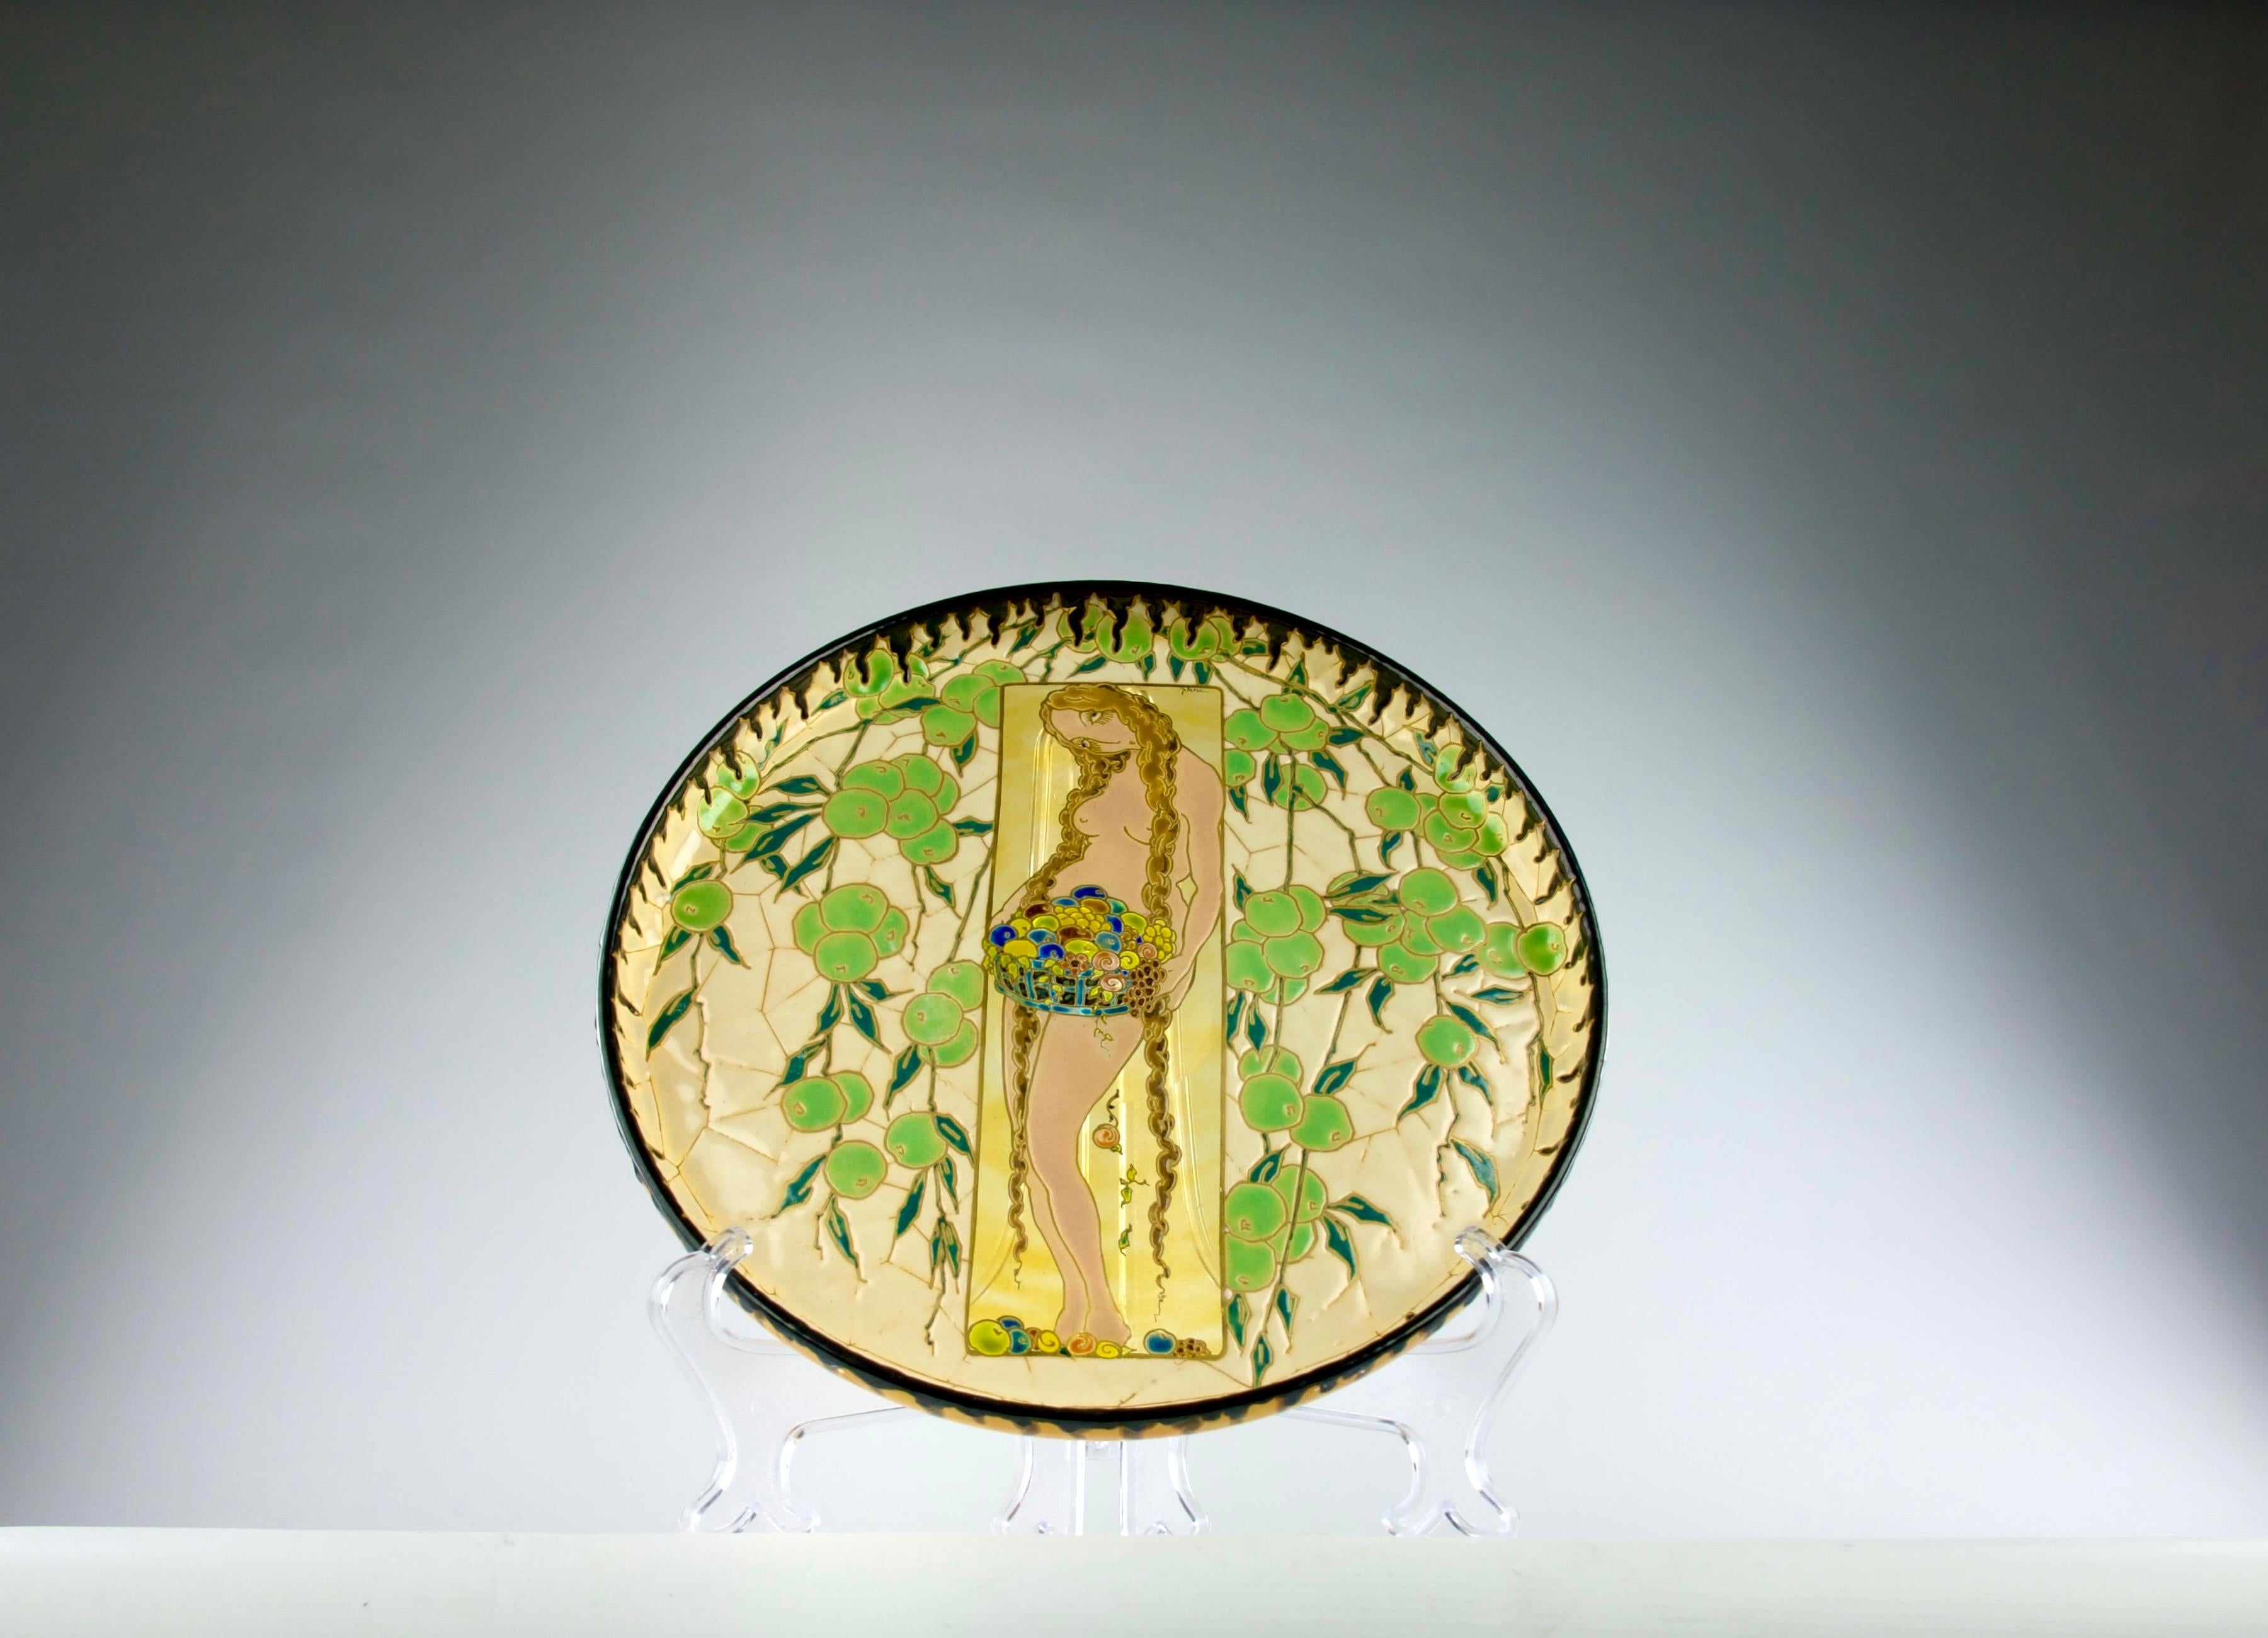 Wunderschönes und äußerst seltenes signiertes und beschriftetes emailliertes Glasplattenkunstwerk von Nicolas Platon Argyriades (1888-1968). Darstellung einer nackten Frau, die eine Schale mit Opfergaben trägt und von Früchten umgeben ist. Auf der